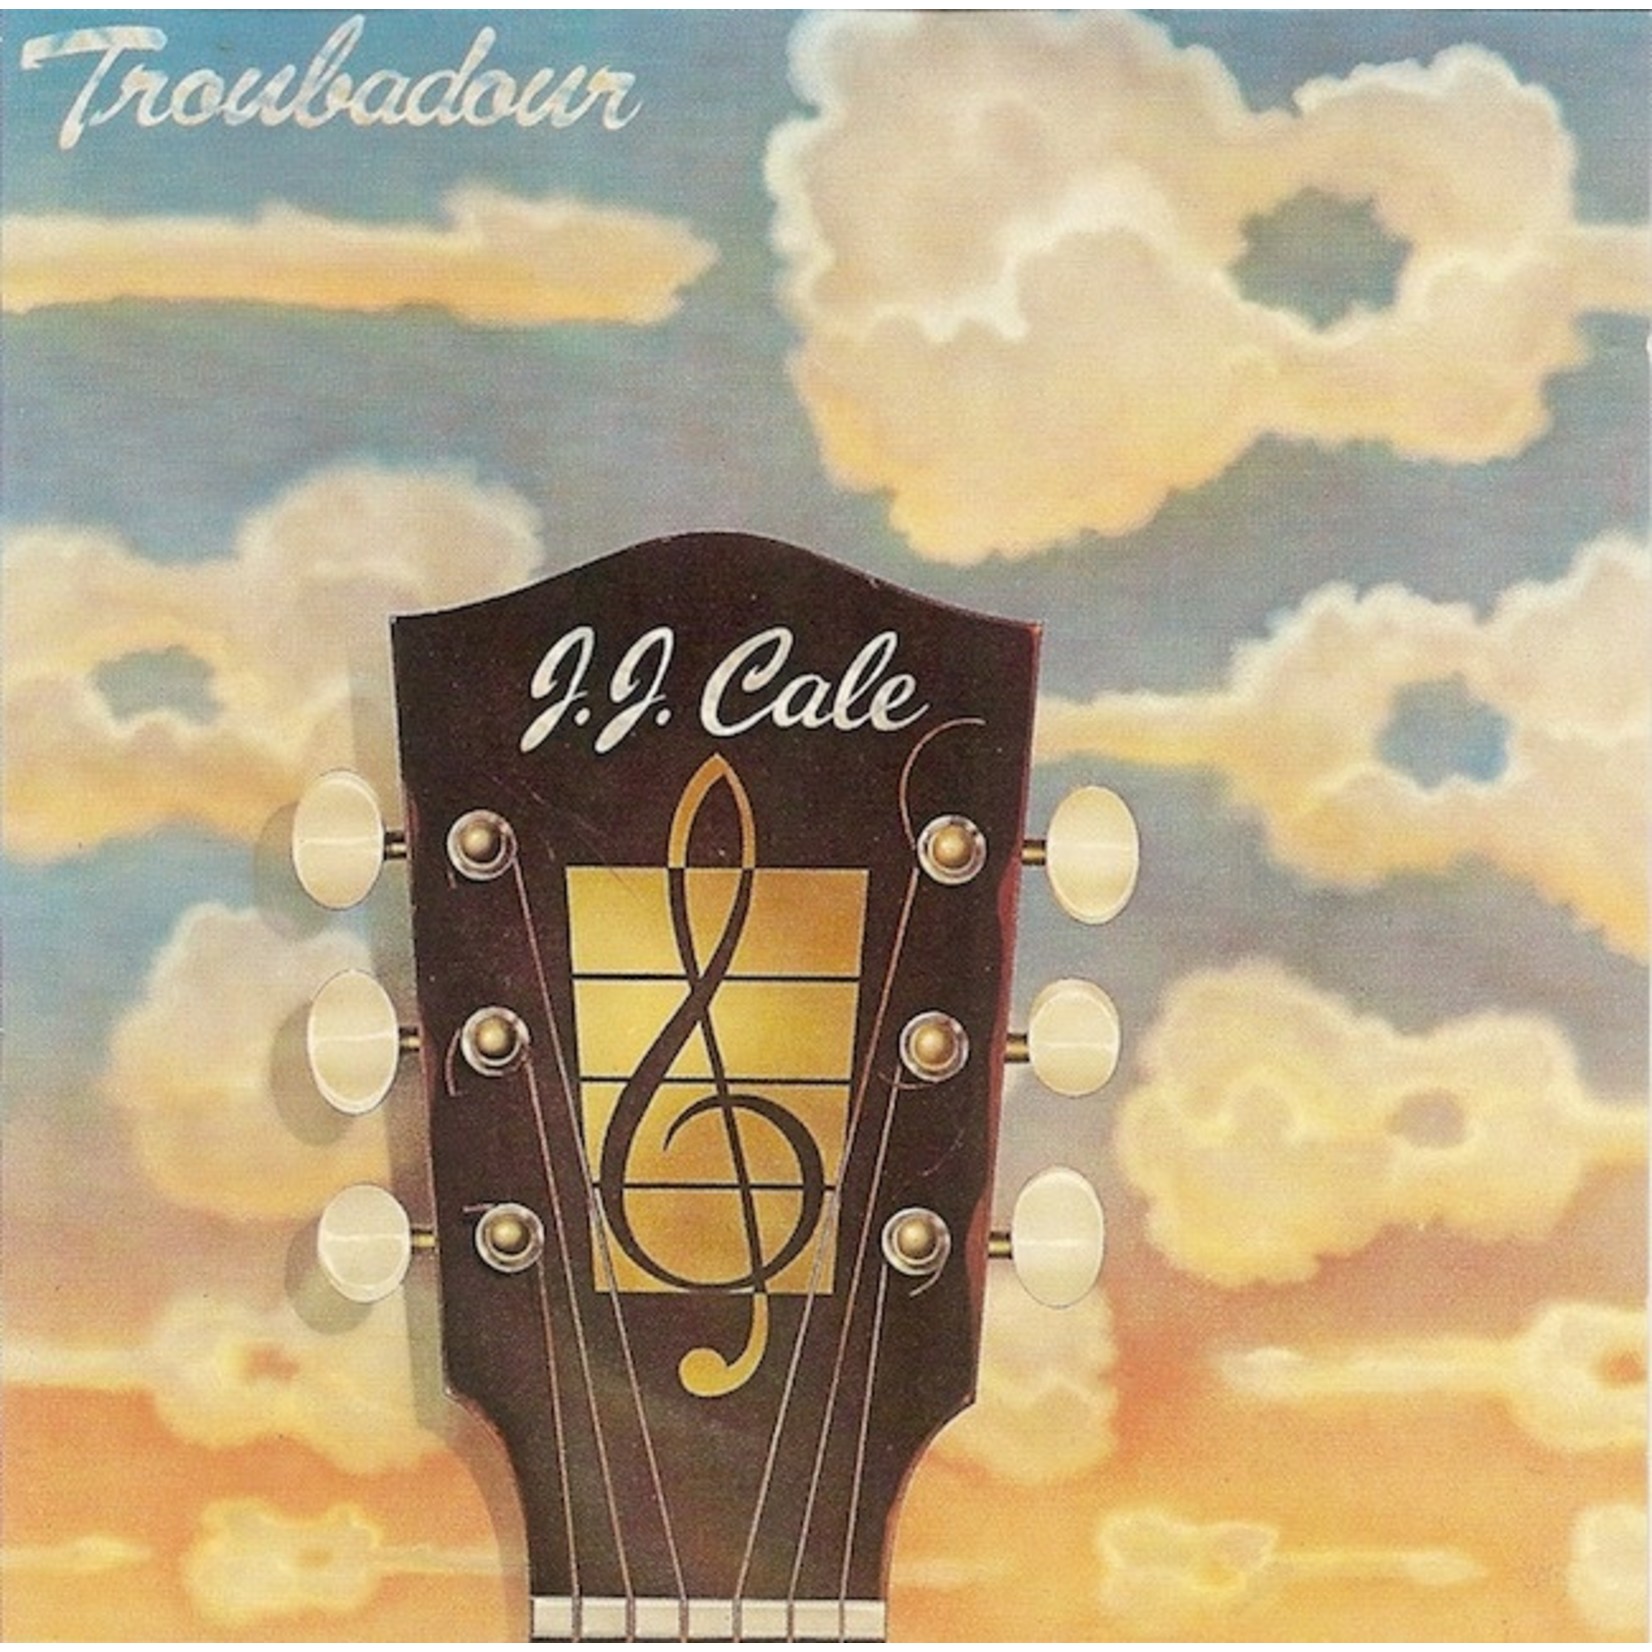 [Vintage] JJ Cale - Troubadour